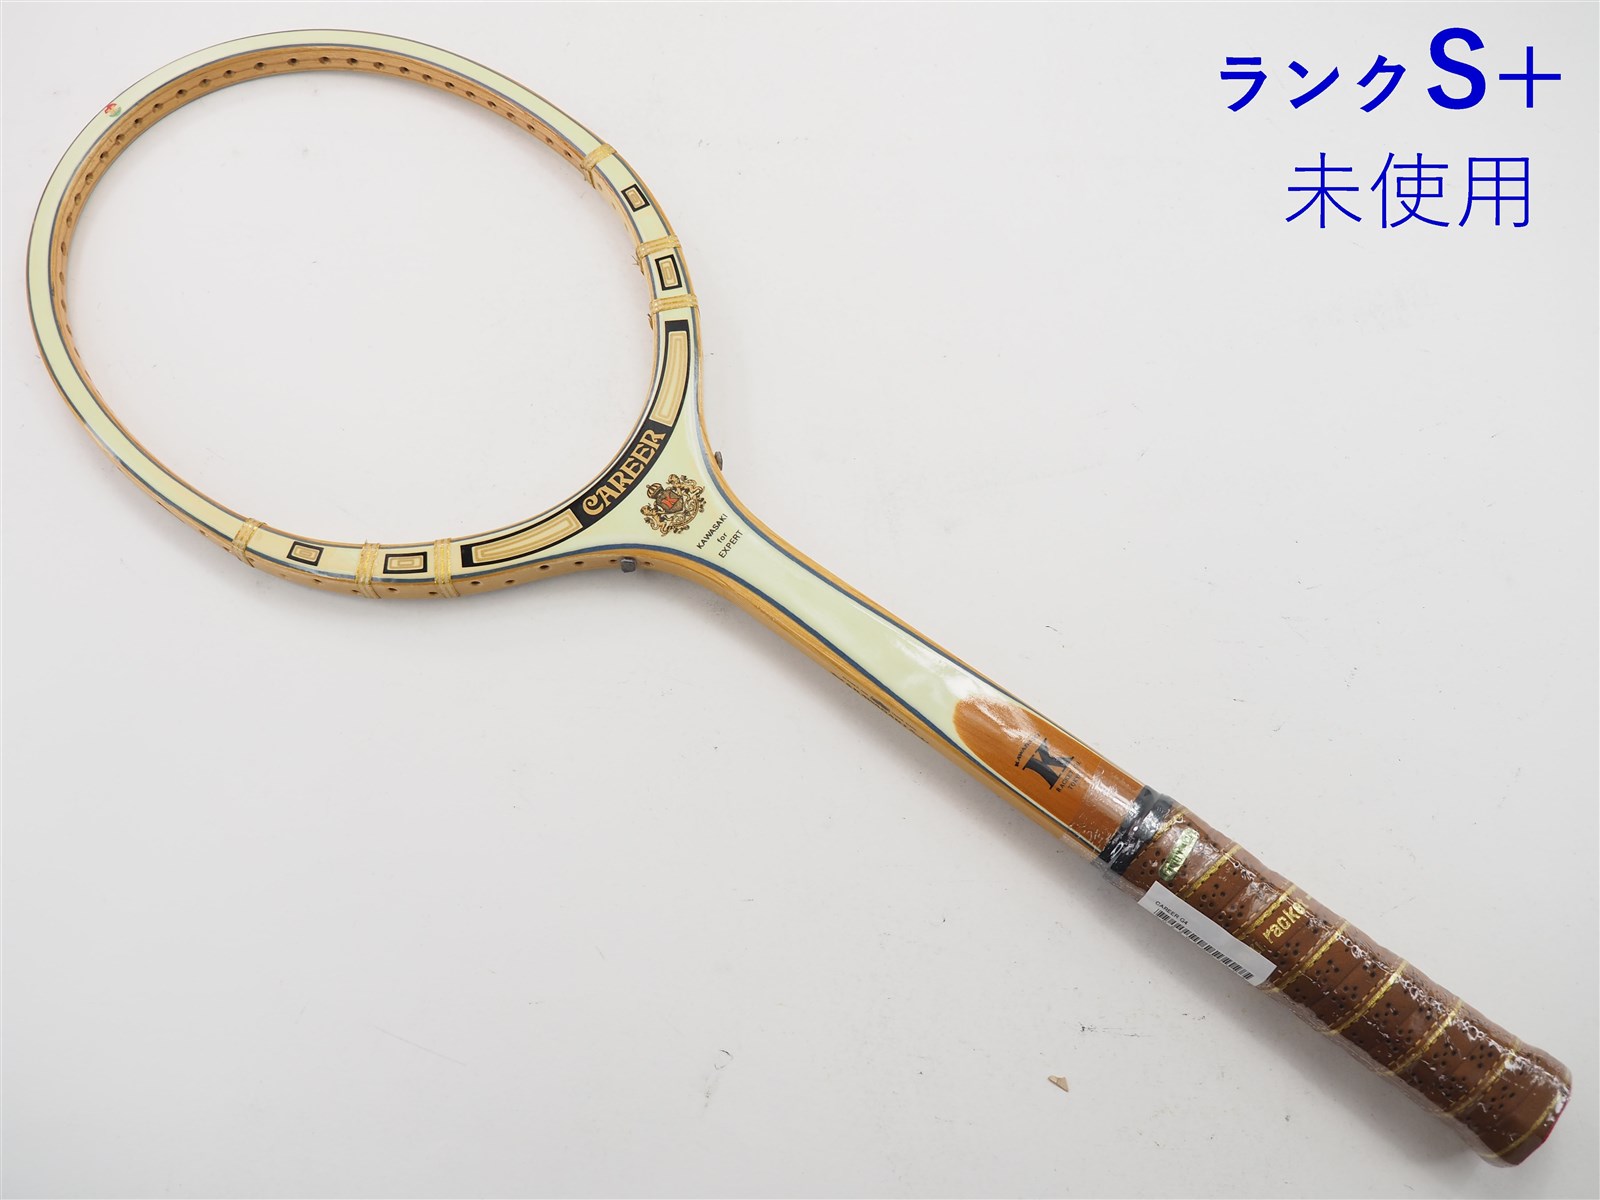 カワサキ キャリアーKAWASAKI CAREER(G4)【テニスラケット】【送料無料】